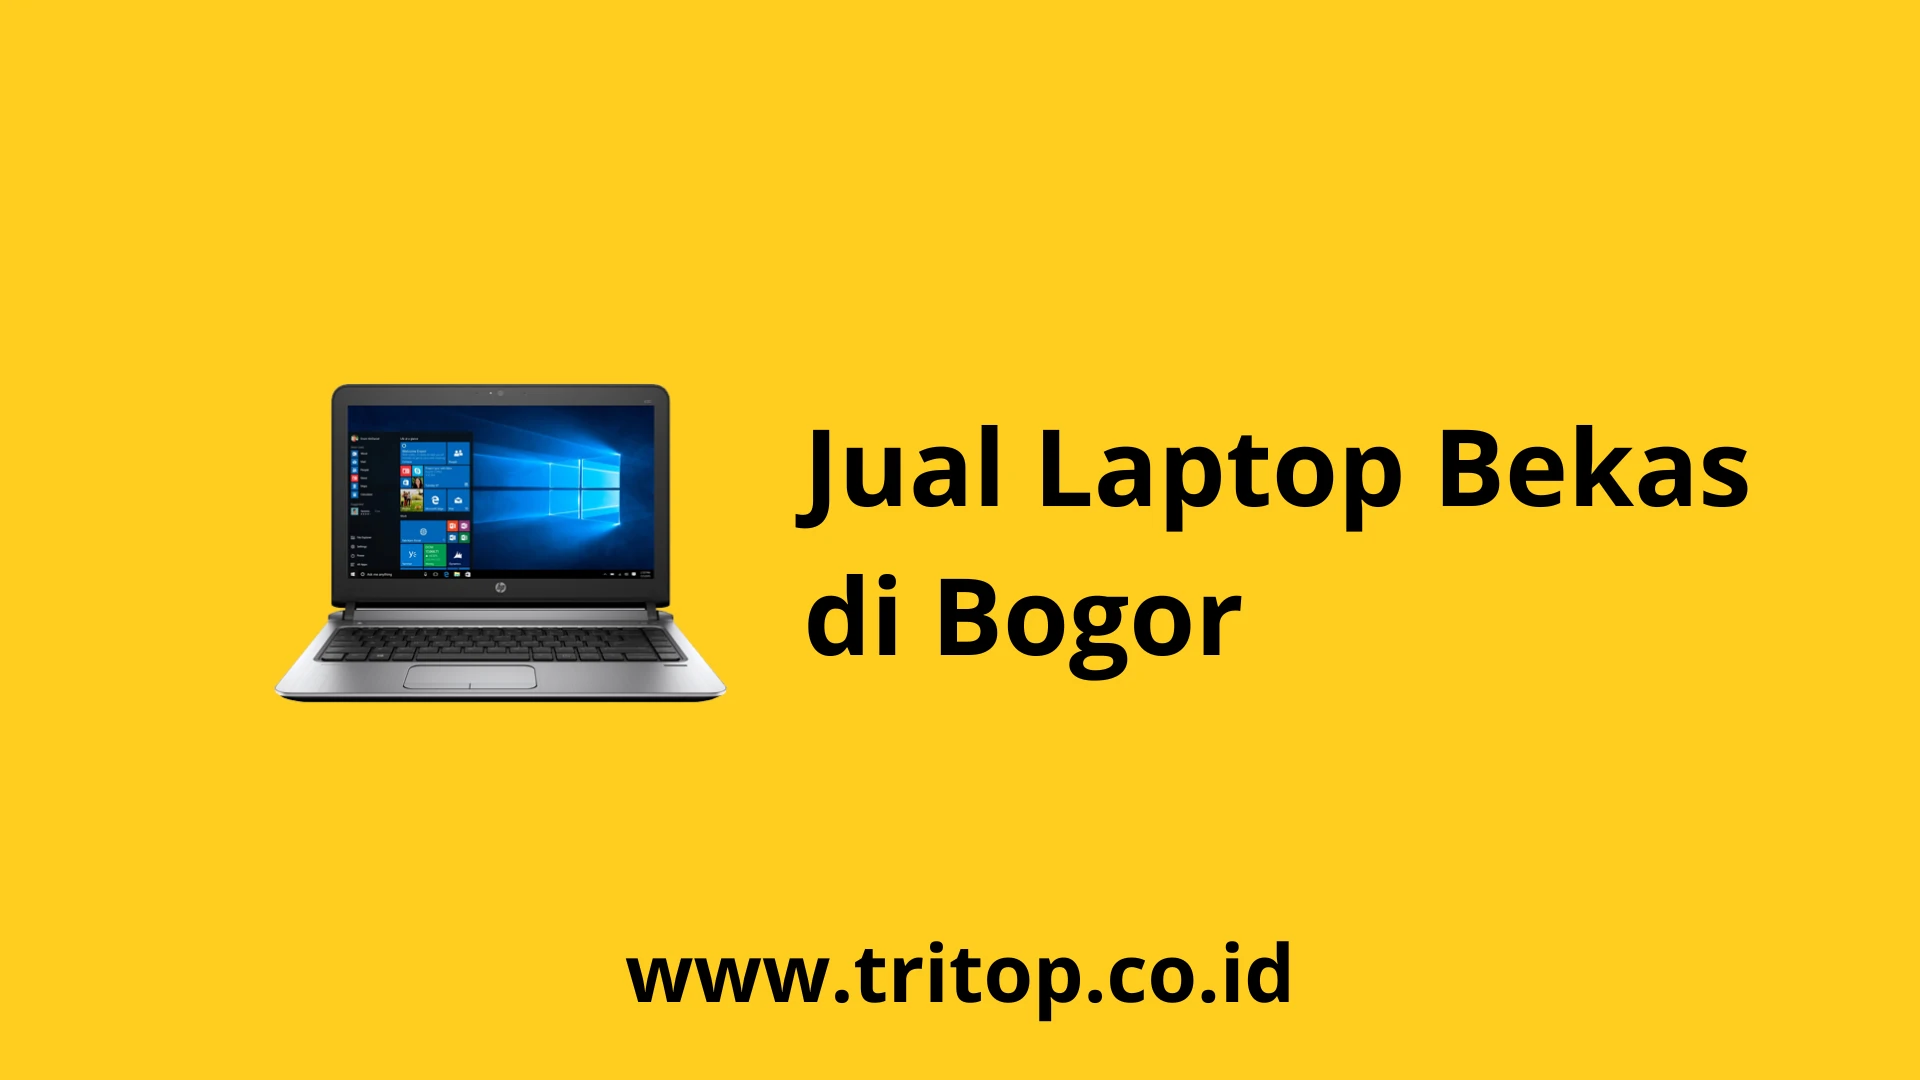 Jual Laptop Bekas di Bogor